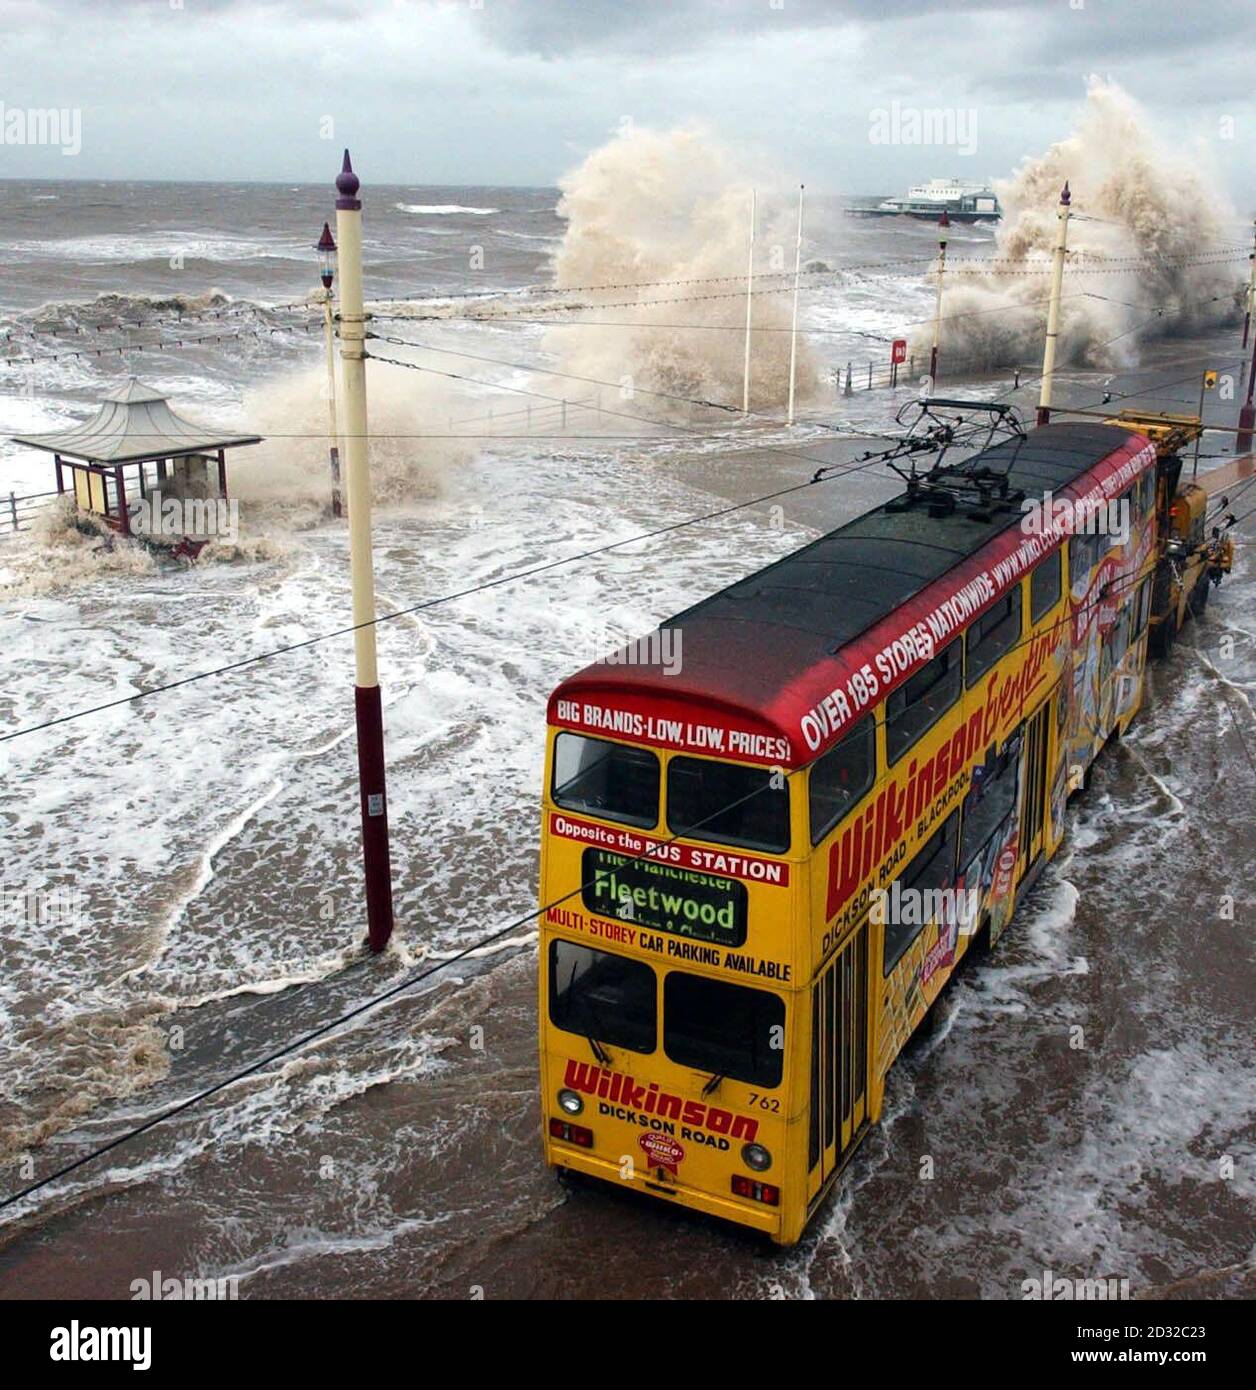 Tutti in mare, i tram sul lungomare di Blackpool dovevano essere trainati in sicurezza dalle alte maree e dai venti di forze di Gale che hanno devastato la costa. La Scozia e l'ovest hanno preso il brunt dei venti di forza di Gale con raffiche di 82mph registrate sull'isola Ebridea di Uist del sud. * ... e 72 mph in Mumbles nel Galles del sud, un portavoce del PA WeatherCentre ha detto. Le tempeste sono meno gravi delle violente galee di lunedì, che hanno ucciso otto persone e causato danni costando milioni di sterline. Ma la polizia ha avvertito gli automobilisti di prestare particolare attenzione sulle strade e di viaggiare solo su viaggi essenziali quando i venti sono a. Foto Stock